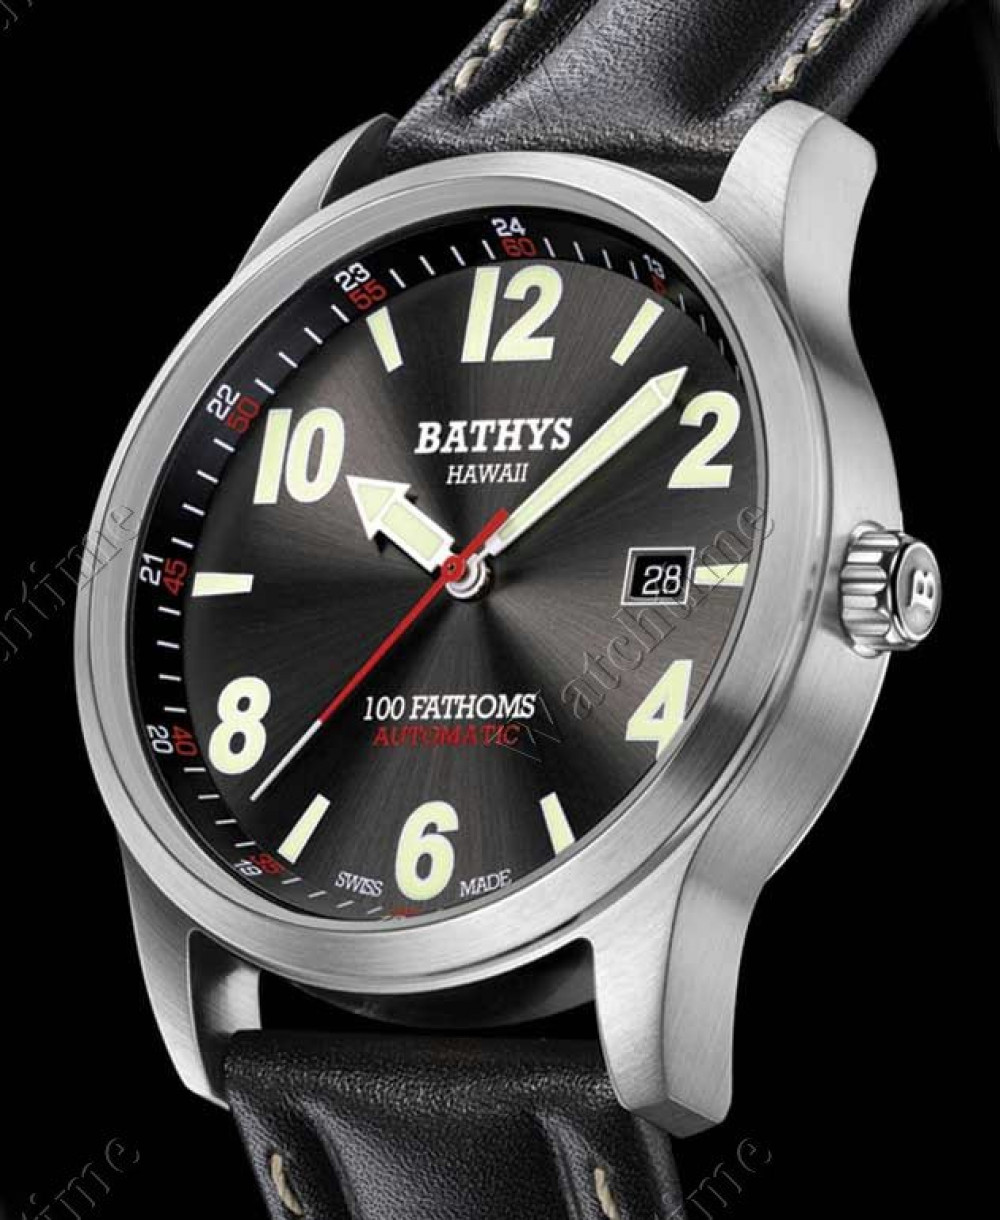 Zegarek firmy Bathys Hawaii, model 100 Fathoms Automatic